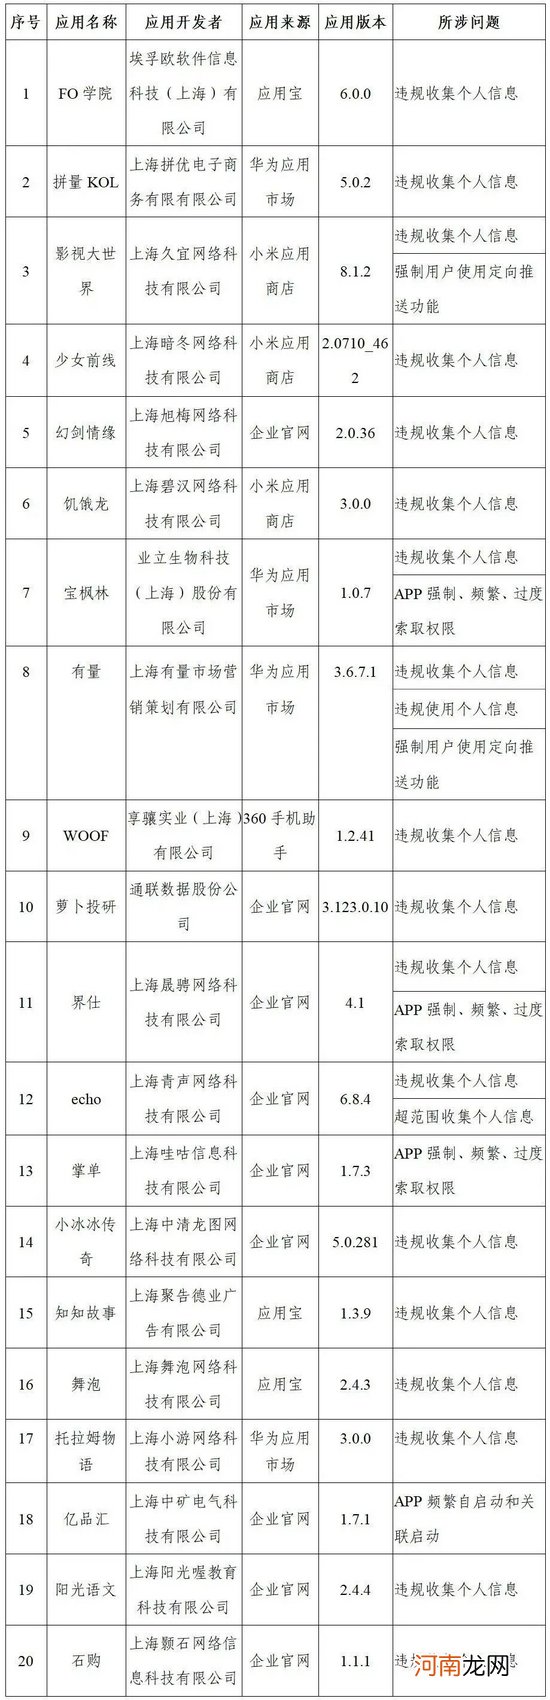 上海市通管局通报下架22款App，要求20款App落实整改